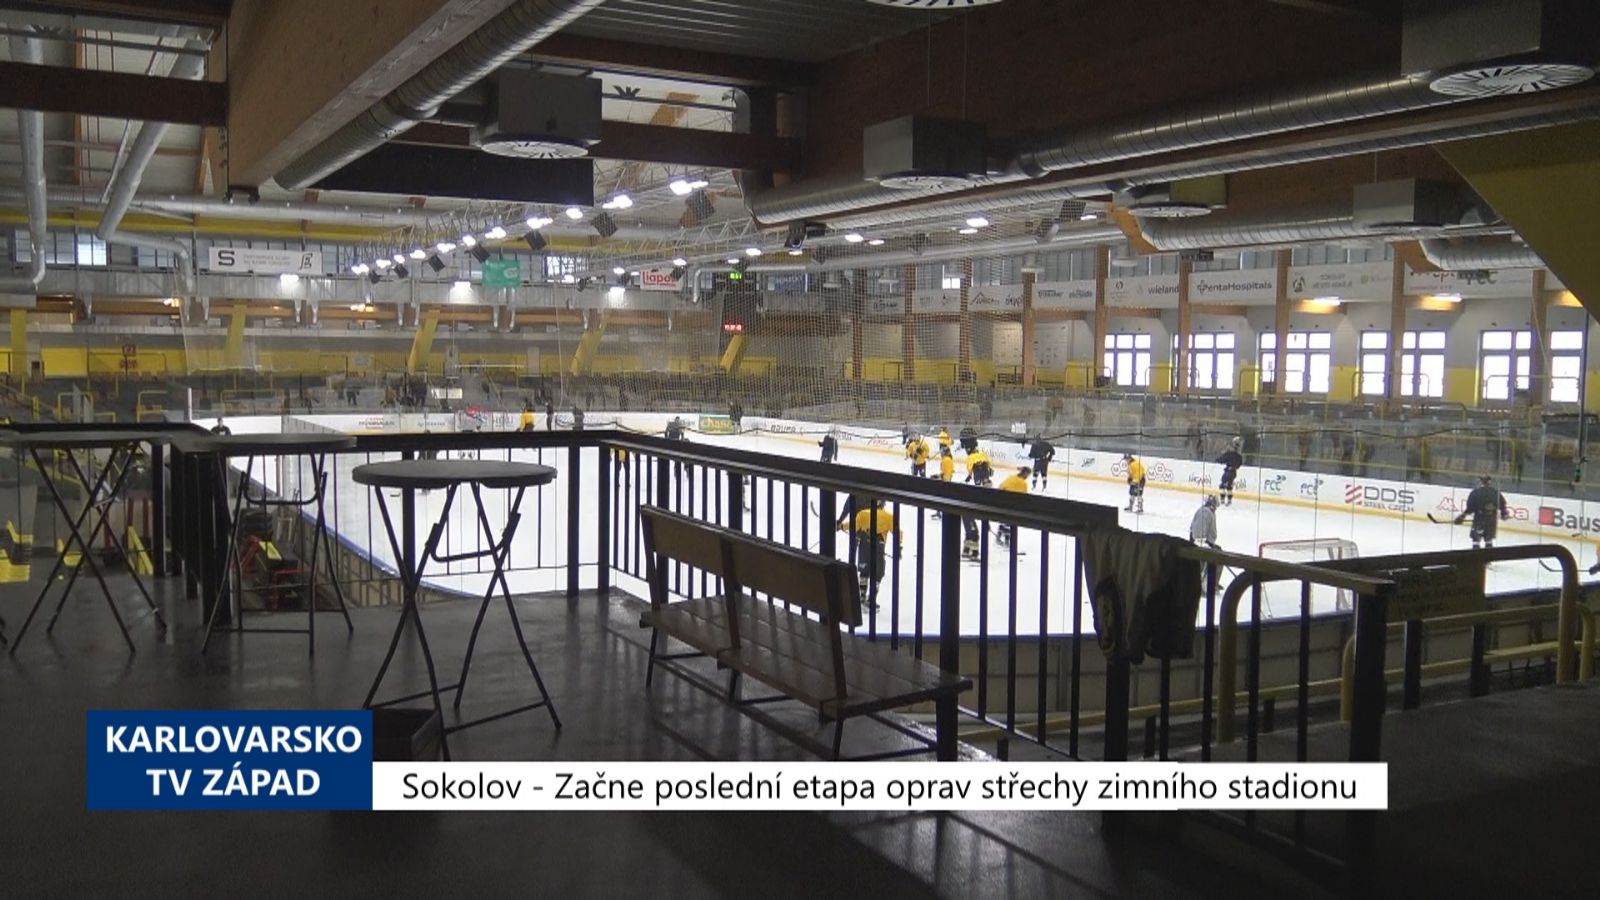 Sokolov: Začne poslední etapa oprav střechy zimního stadionu (TV Západ)